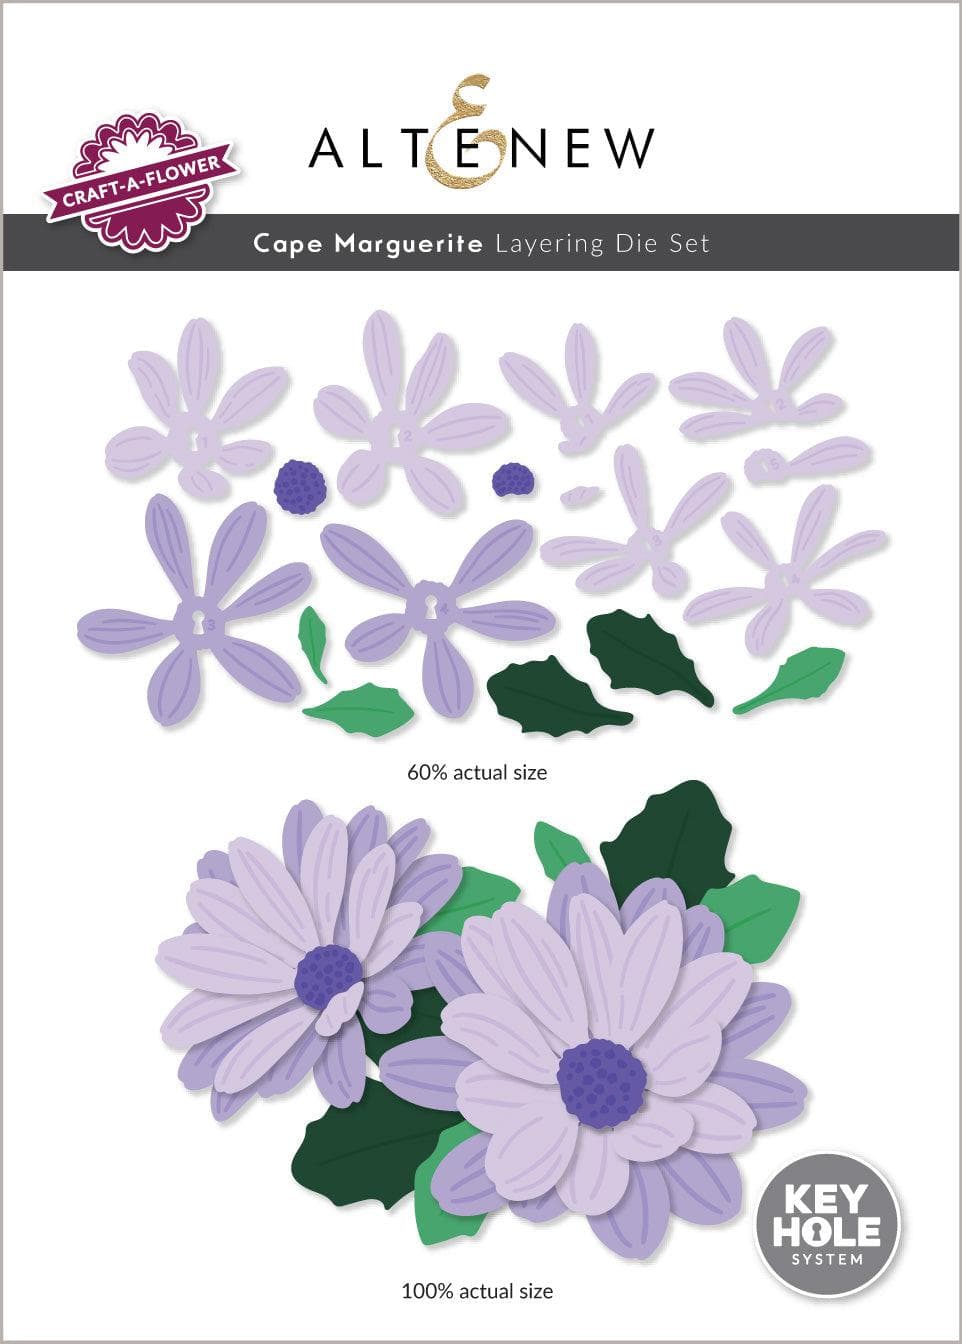 Craft-A-Flower: Cape Marguerite Layering Die Set